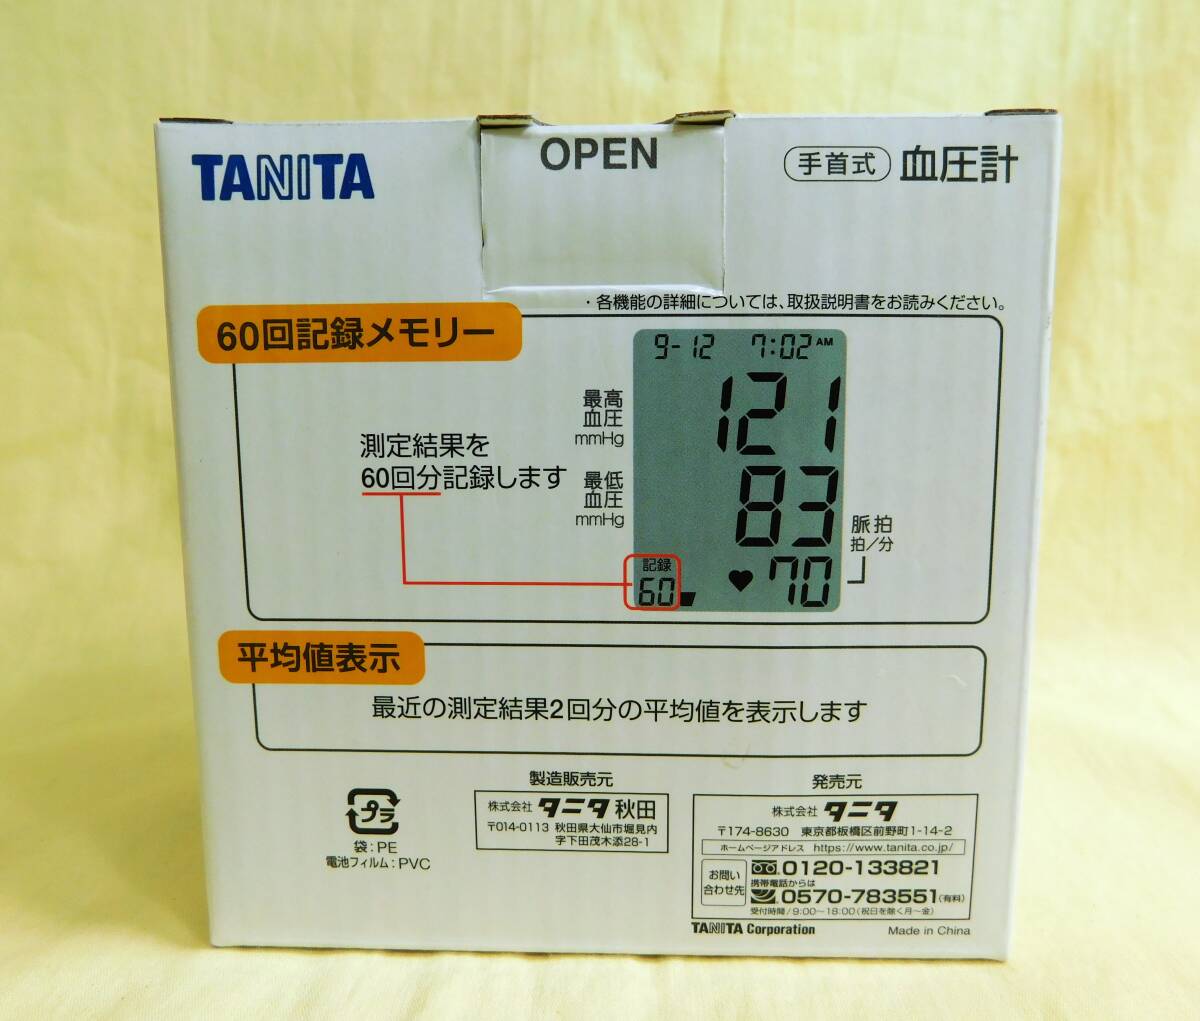 ☆【未開封】TANITA タニタ 手首式血圧計 BP-212 60回記録メモリー 平均値表示 乾電池式 ワンプッシュで簡単測定☆送料520円の画像3